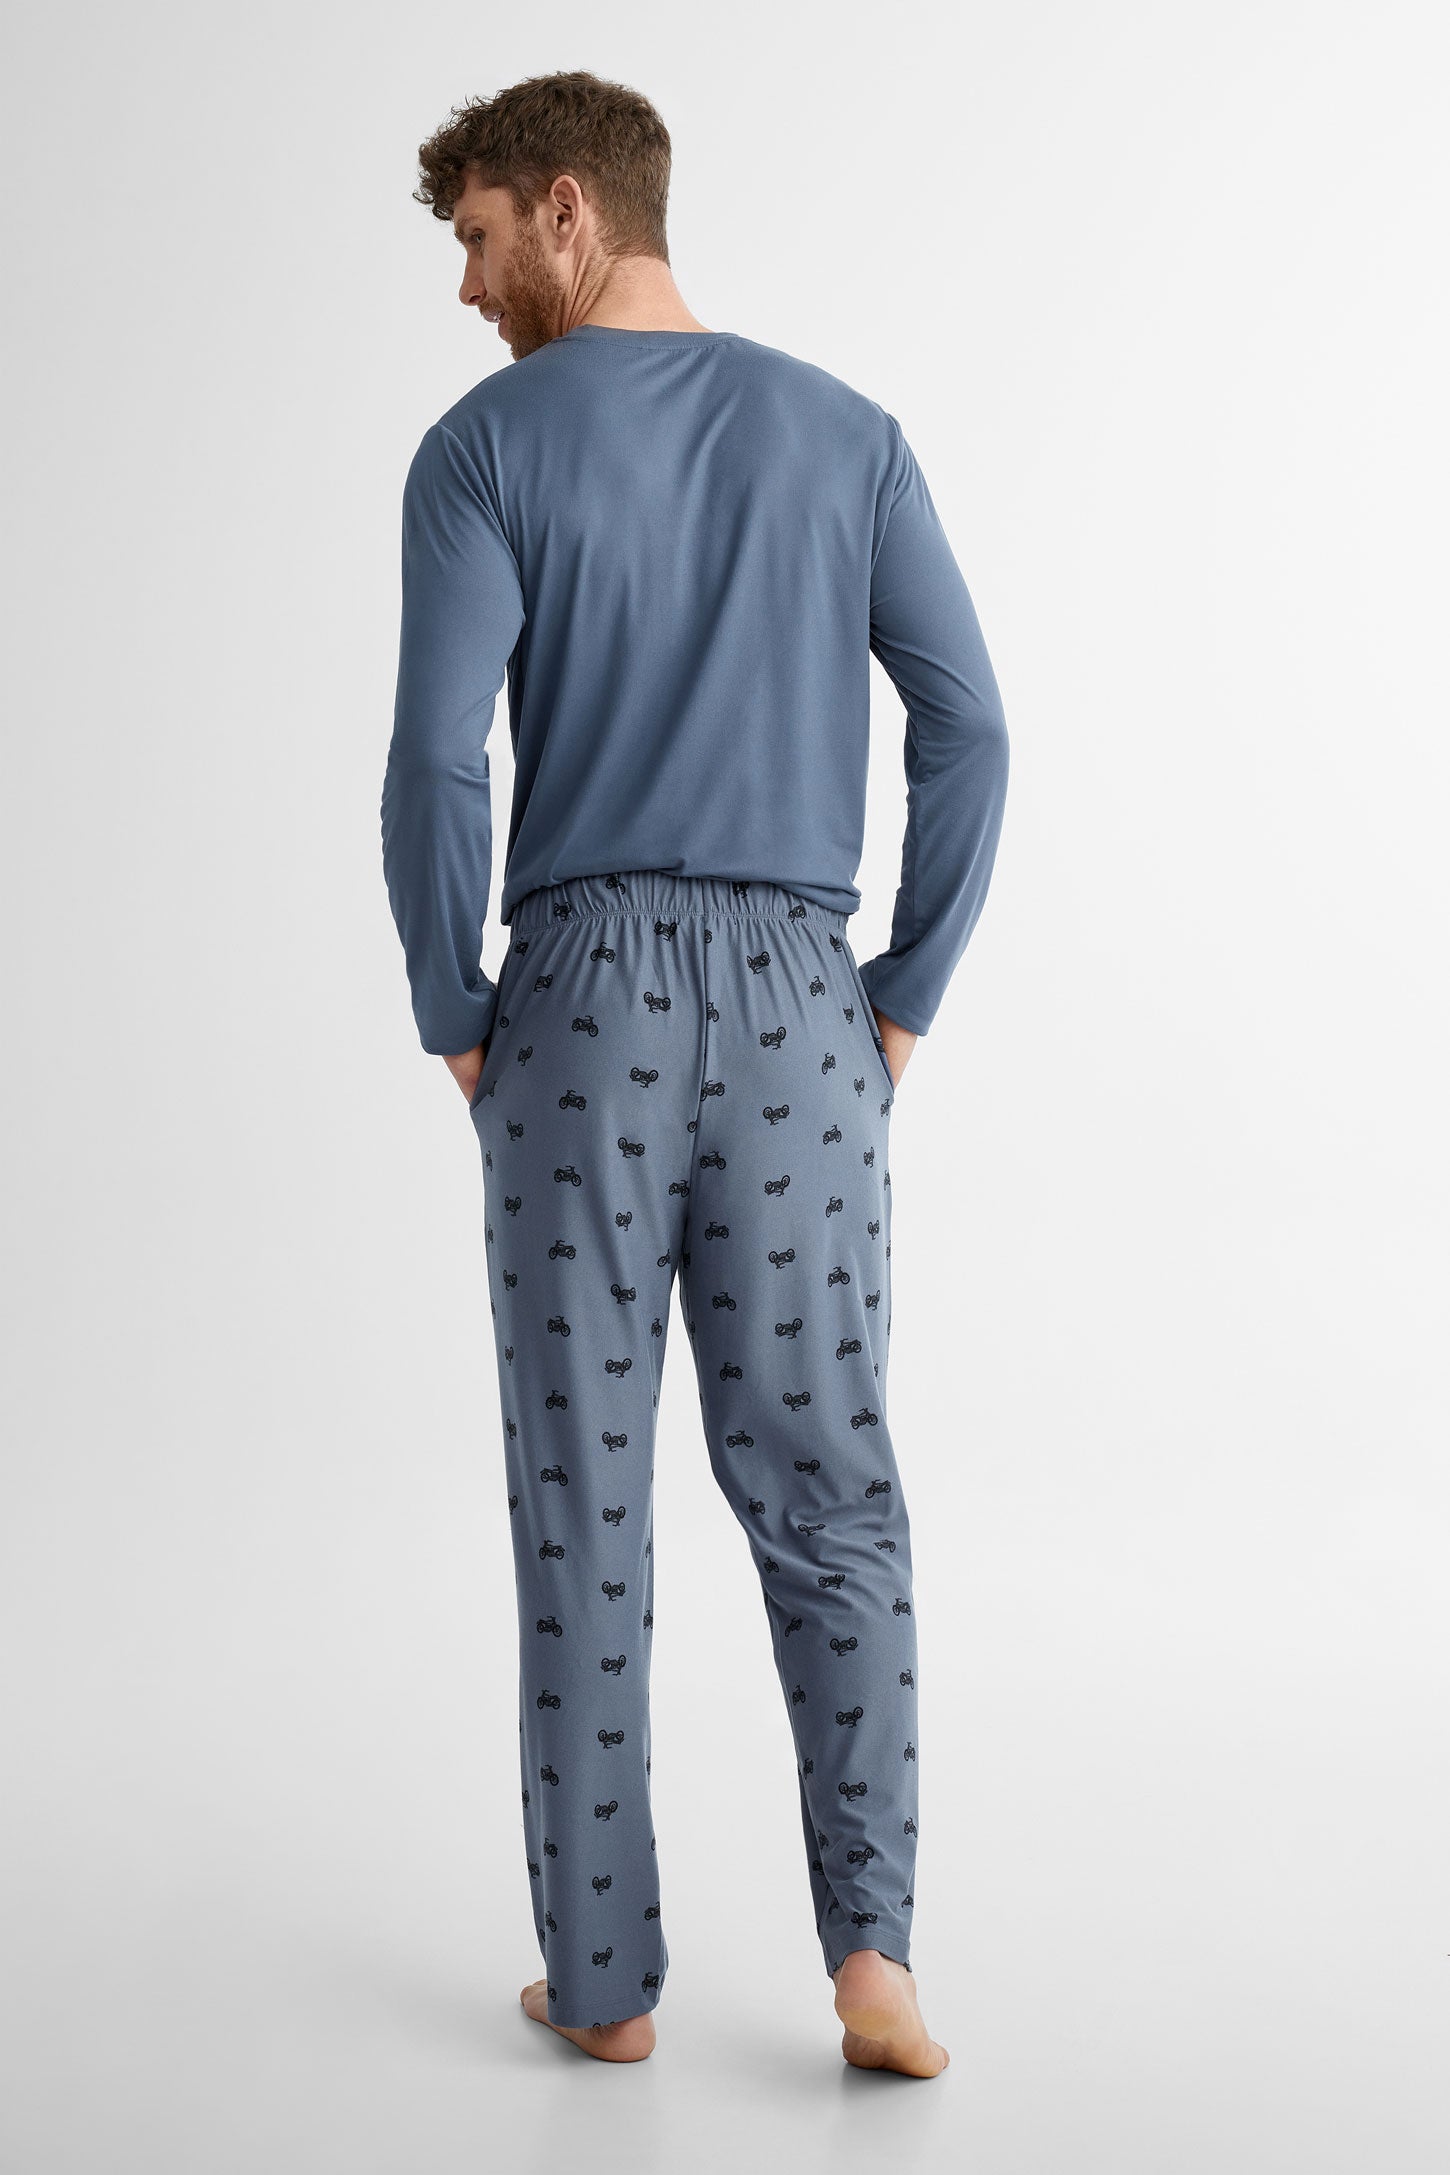 Duos futés, Pantalon pyjama en Moss, 2/40$ - Homme && BLEU MULTI